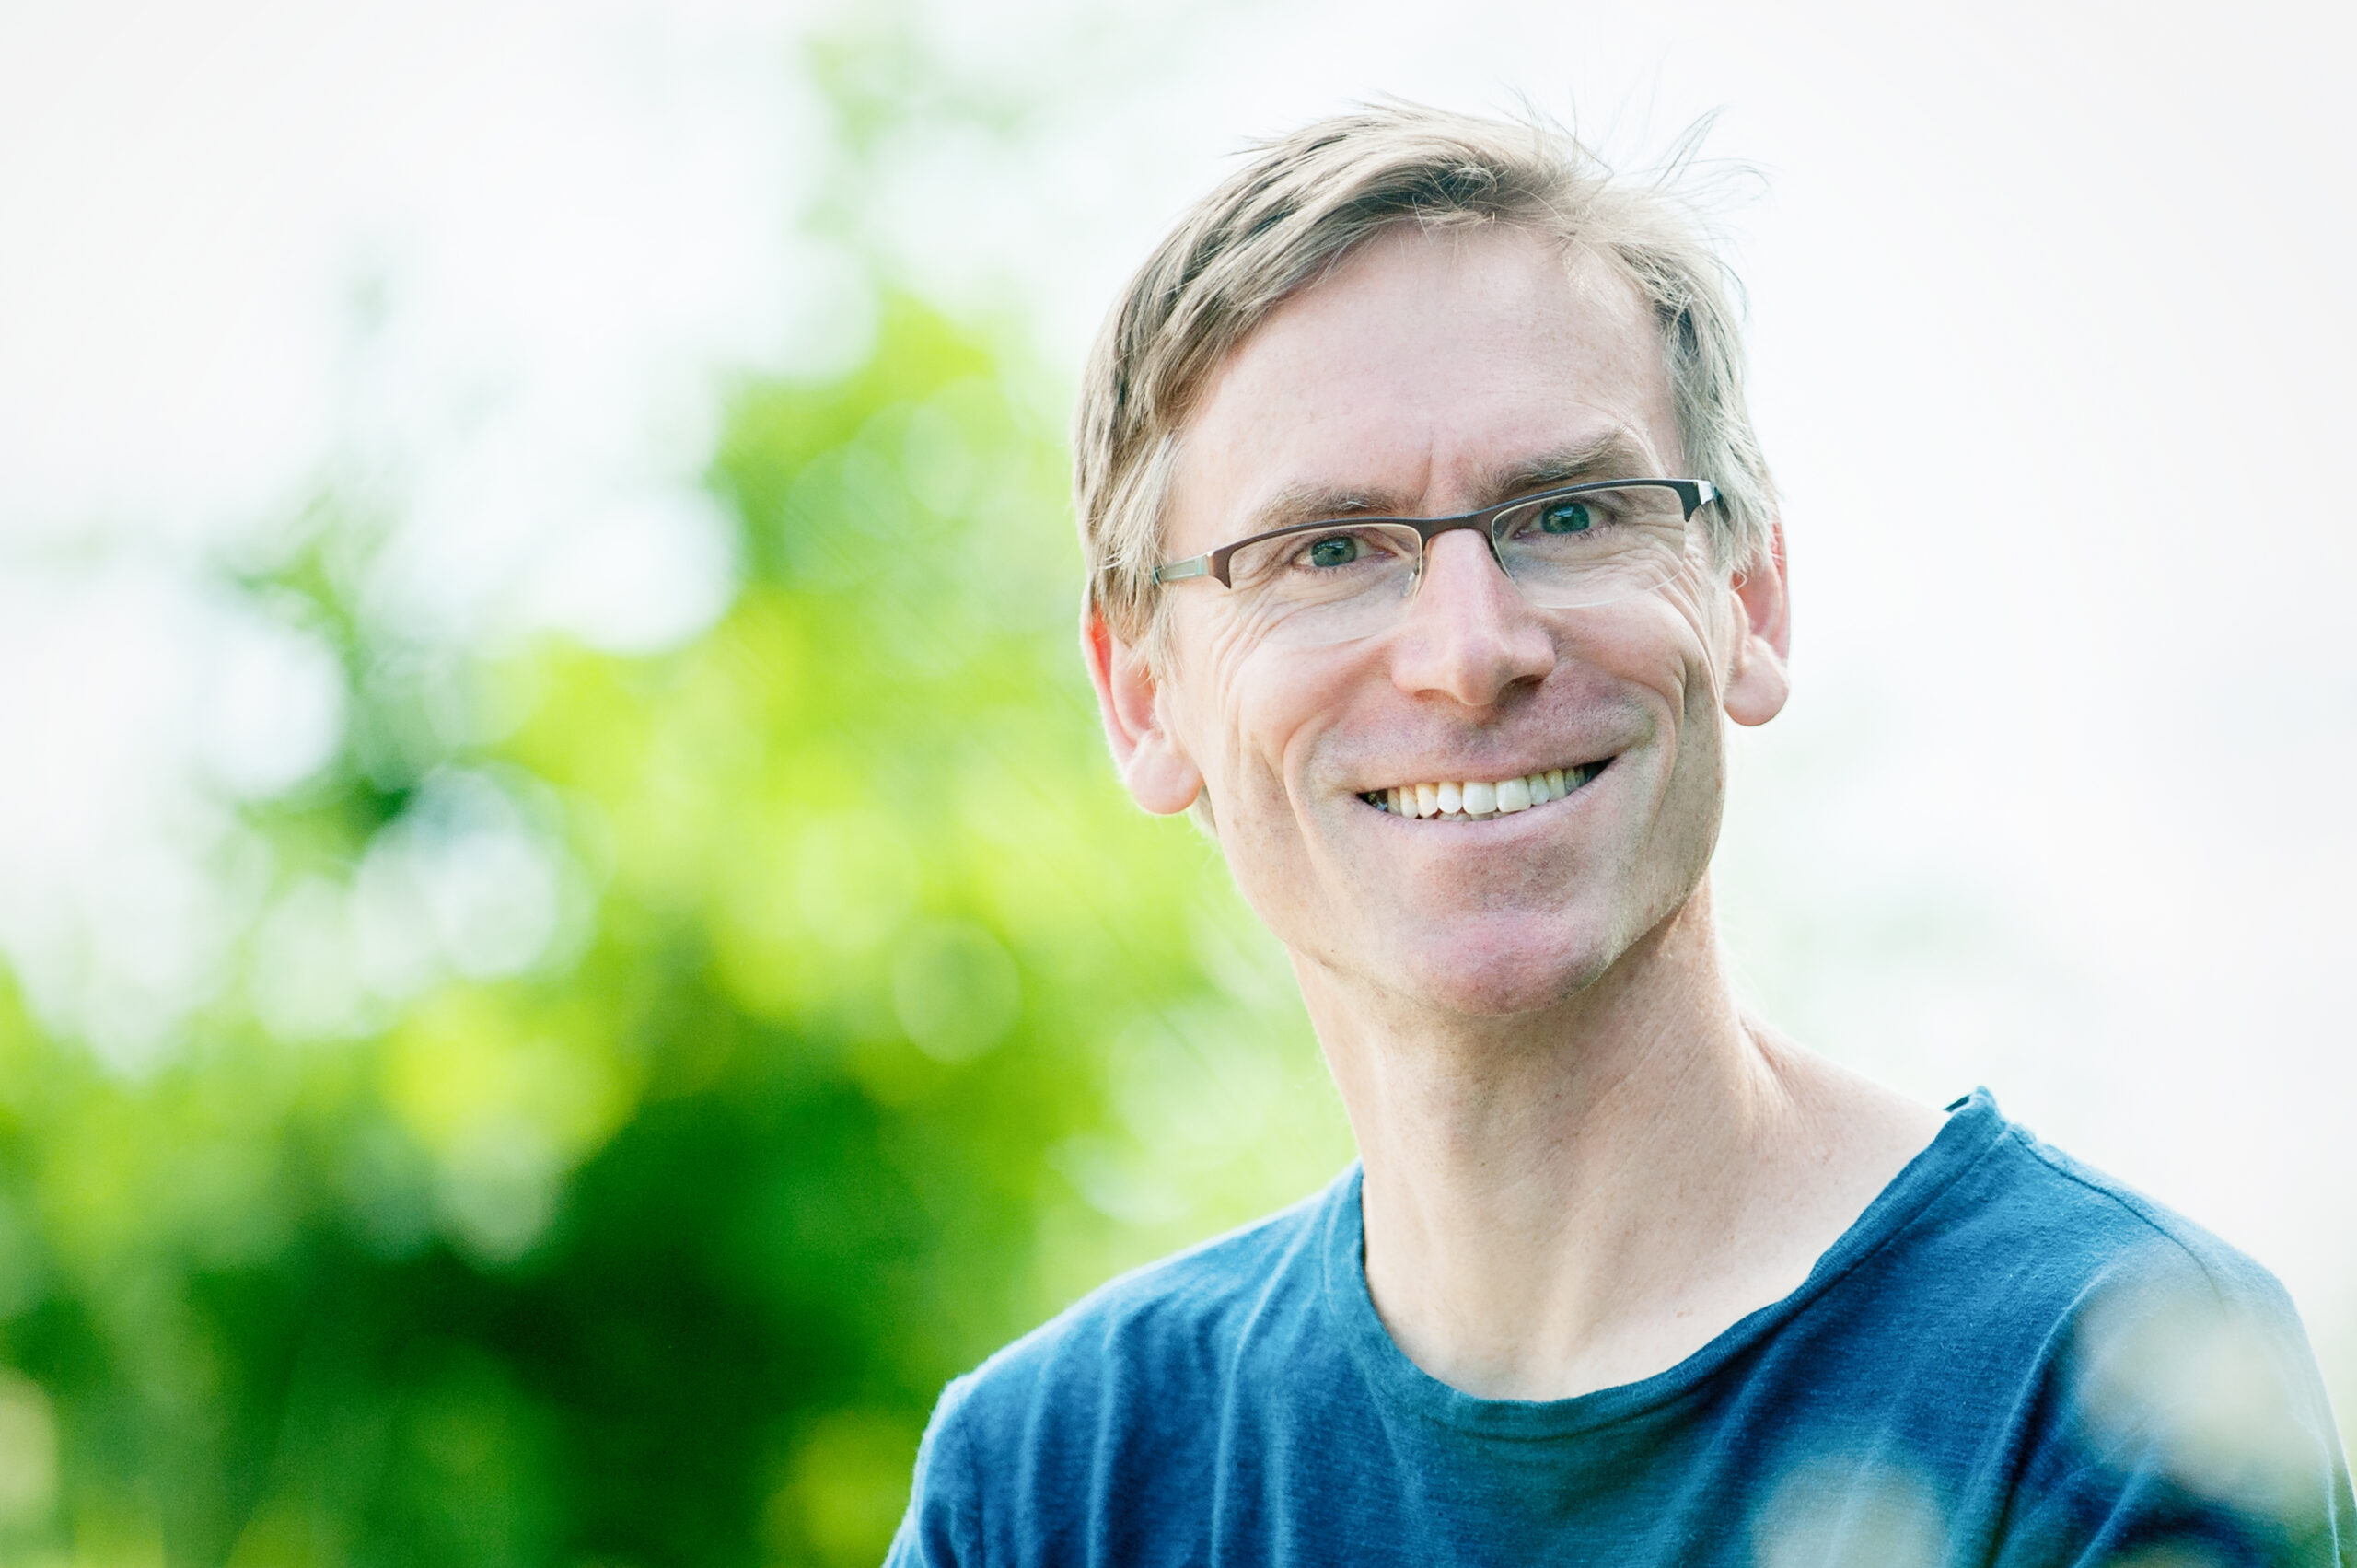 Lächelnder Mann mit Brille, grauen Haaren und blauem Pullover vor grün weißem Hintergrund